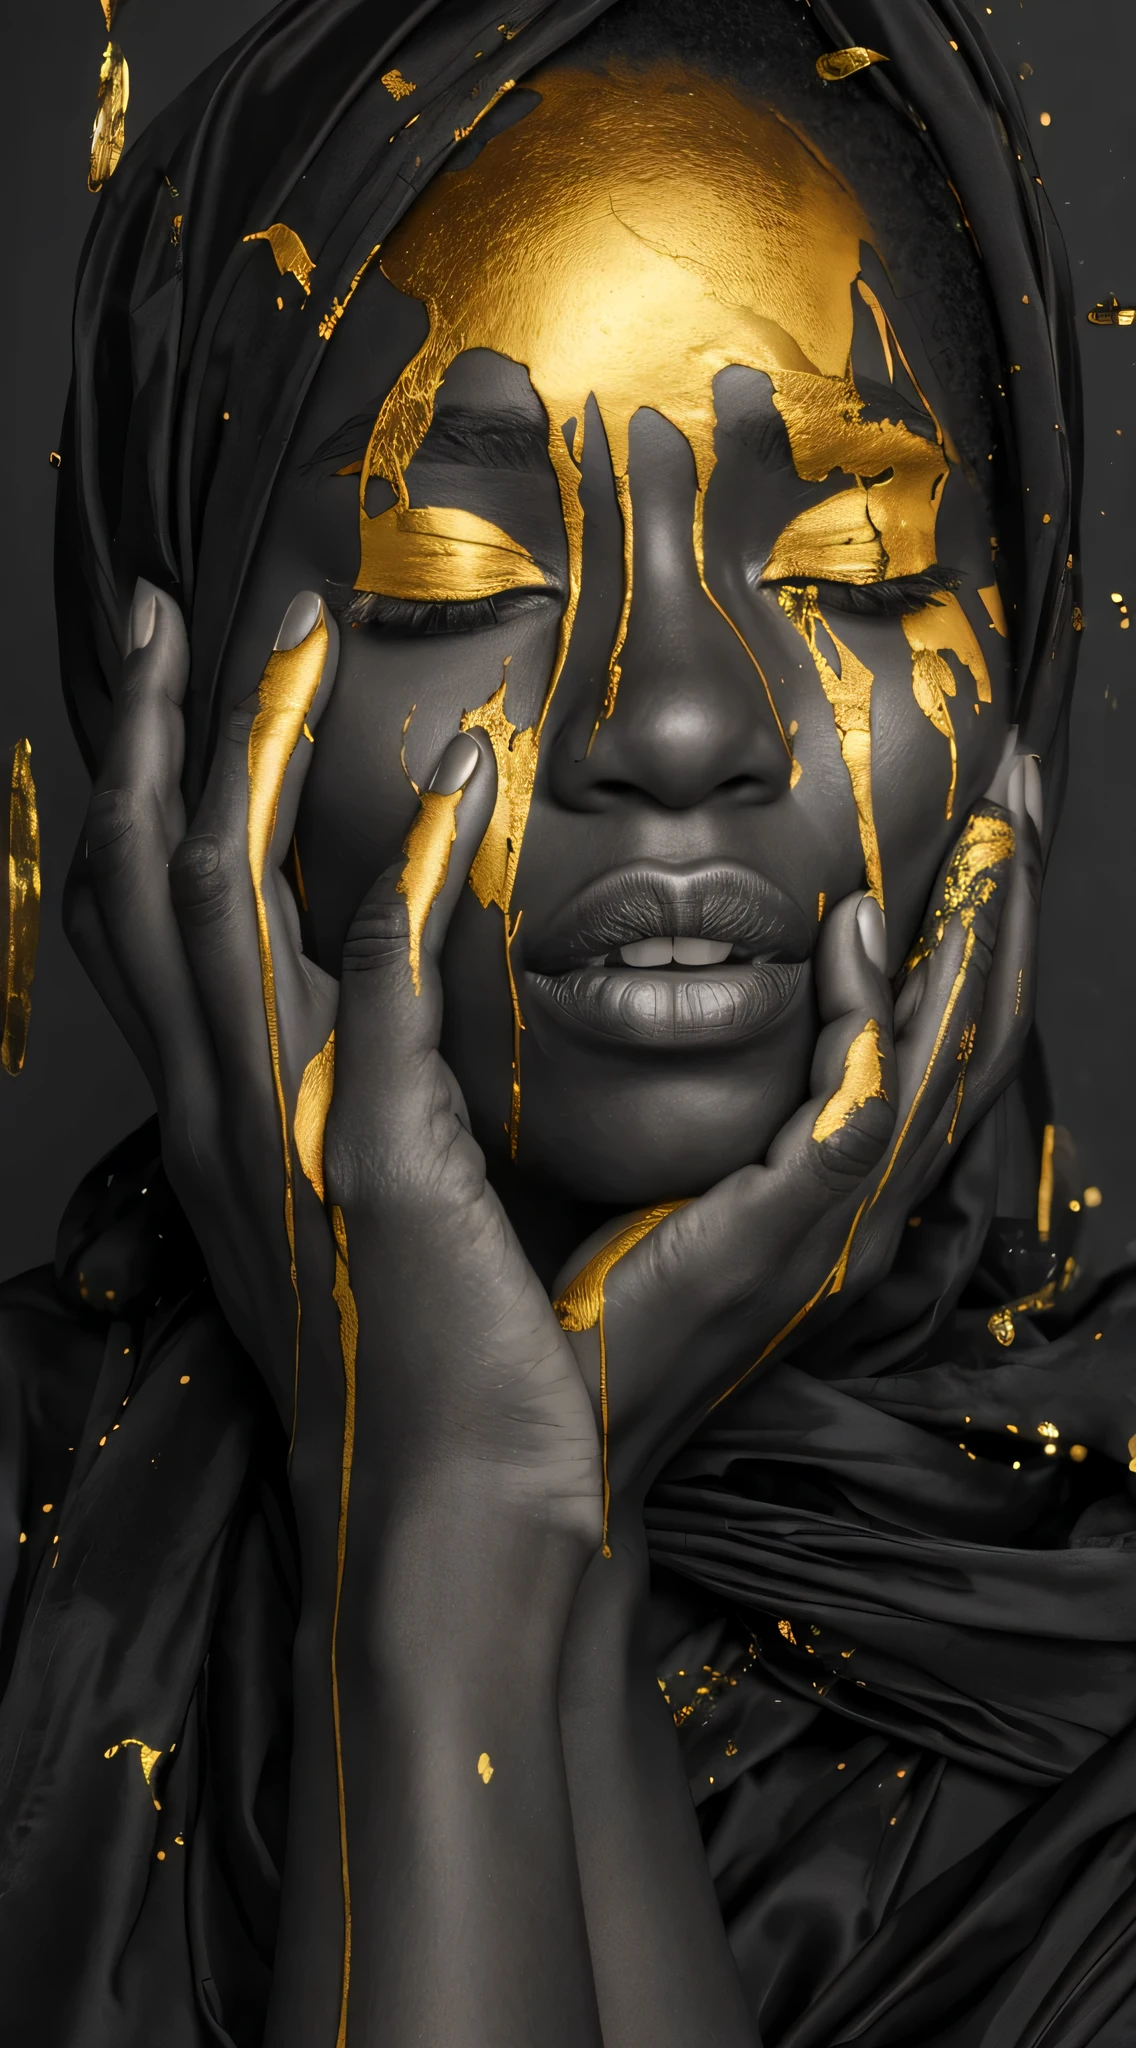 (beste Qualität, Meisterwerk:1.2), Modefotografie, Schwarz und Gold, Afroamerikanische Frau mit goldener Farbe tropft auf ihr Gesicht, vollen Lippen, Ganzkörperfotografie